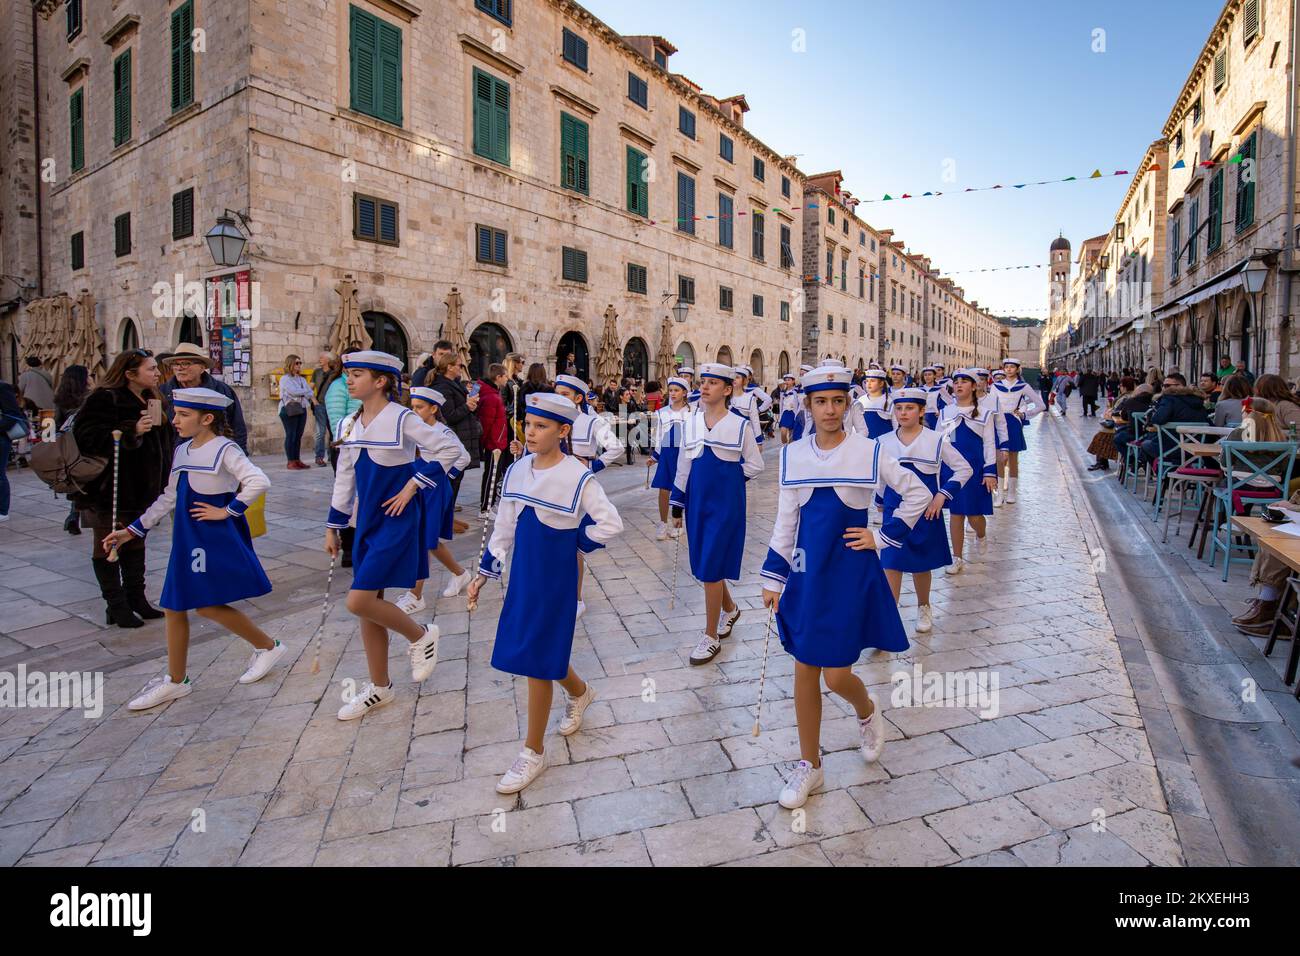 15.02.2020., Dubrovnik, Croazia - la tradizionale parata del Carnevale di Dubrovnik, organizzata dalla Città di Dubrovnik e dall'Ente Turistico di Dubrovnik, celebra il suo anniversario, ventesimo compleanno Foto: Grgo Jelavic/PIXSELL Foto Stock